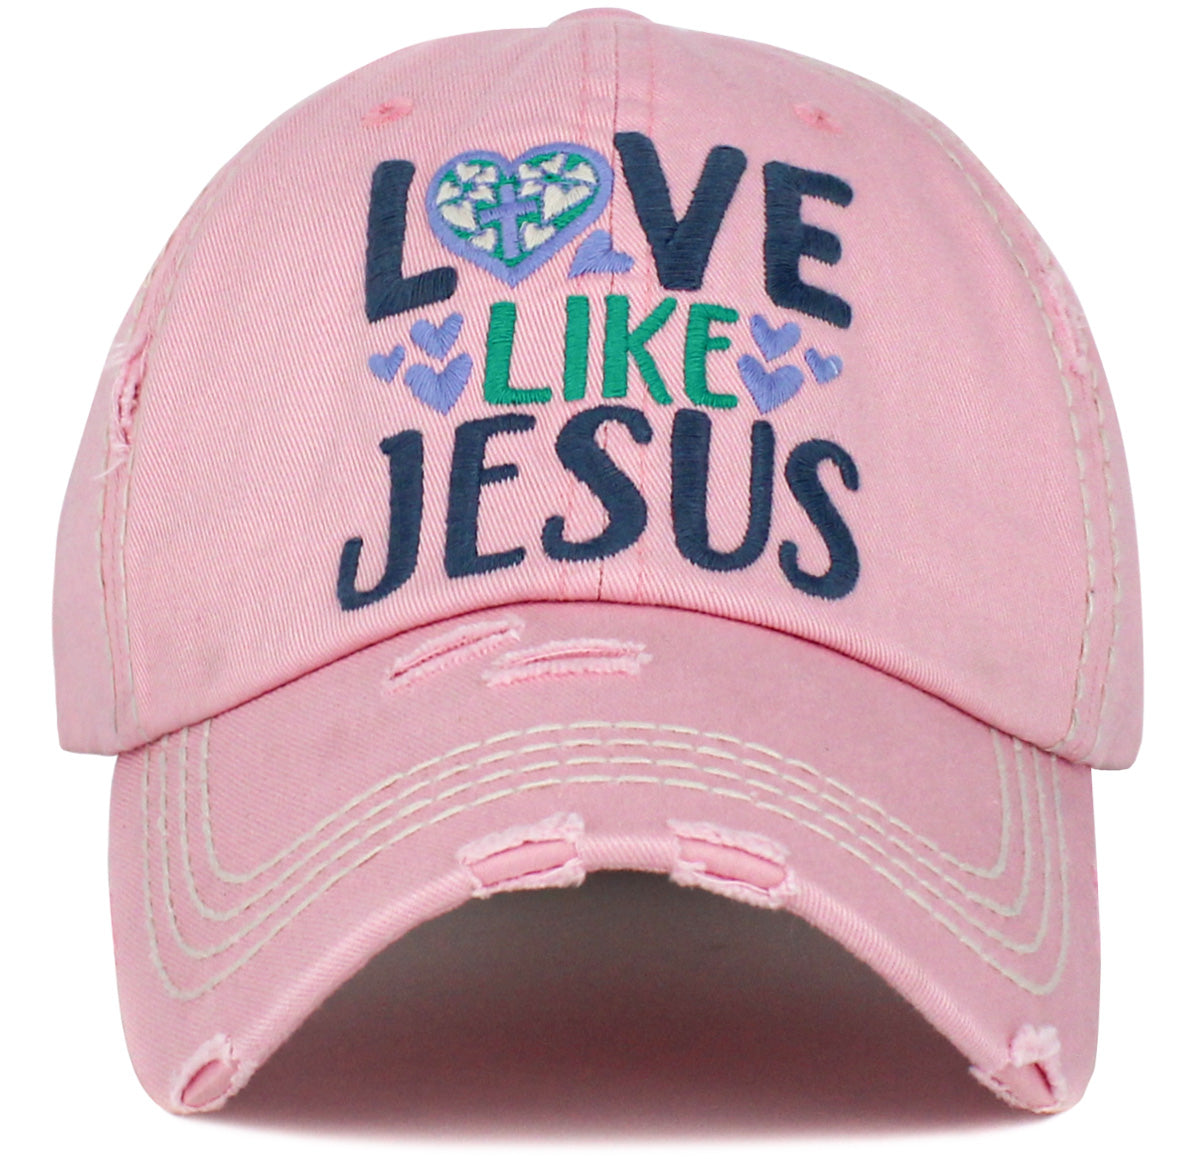 KBV1444 "Love Like Jesus" Washed Vintage Ballcap